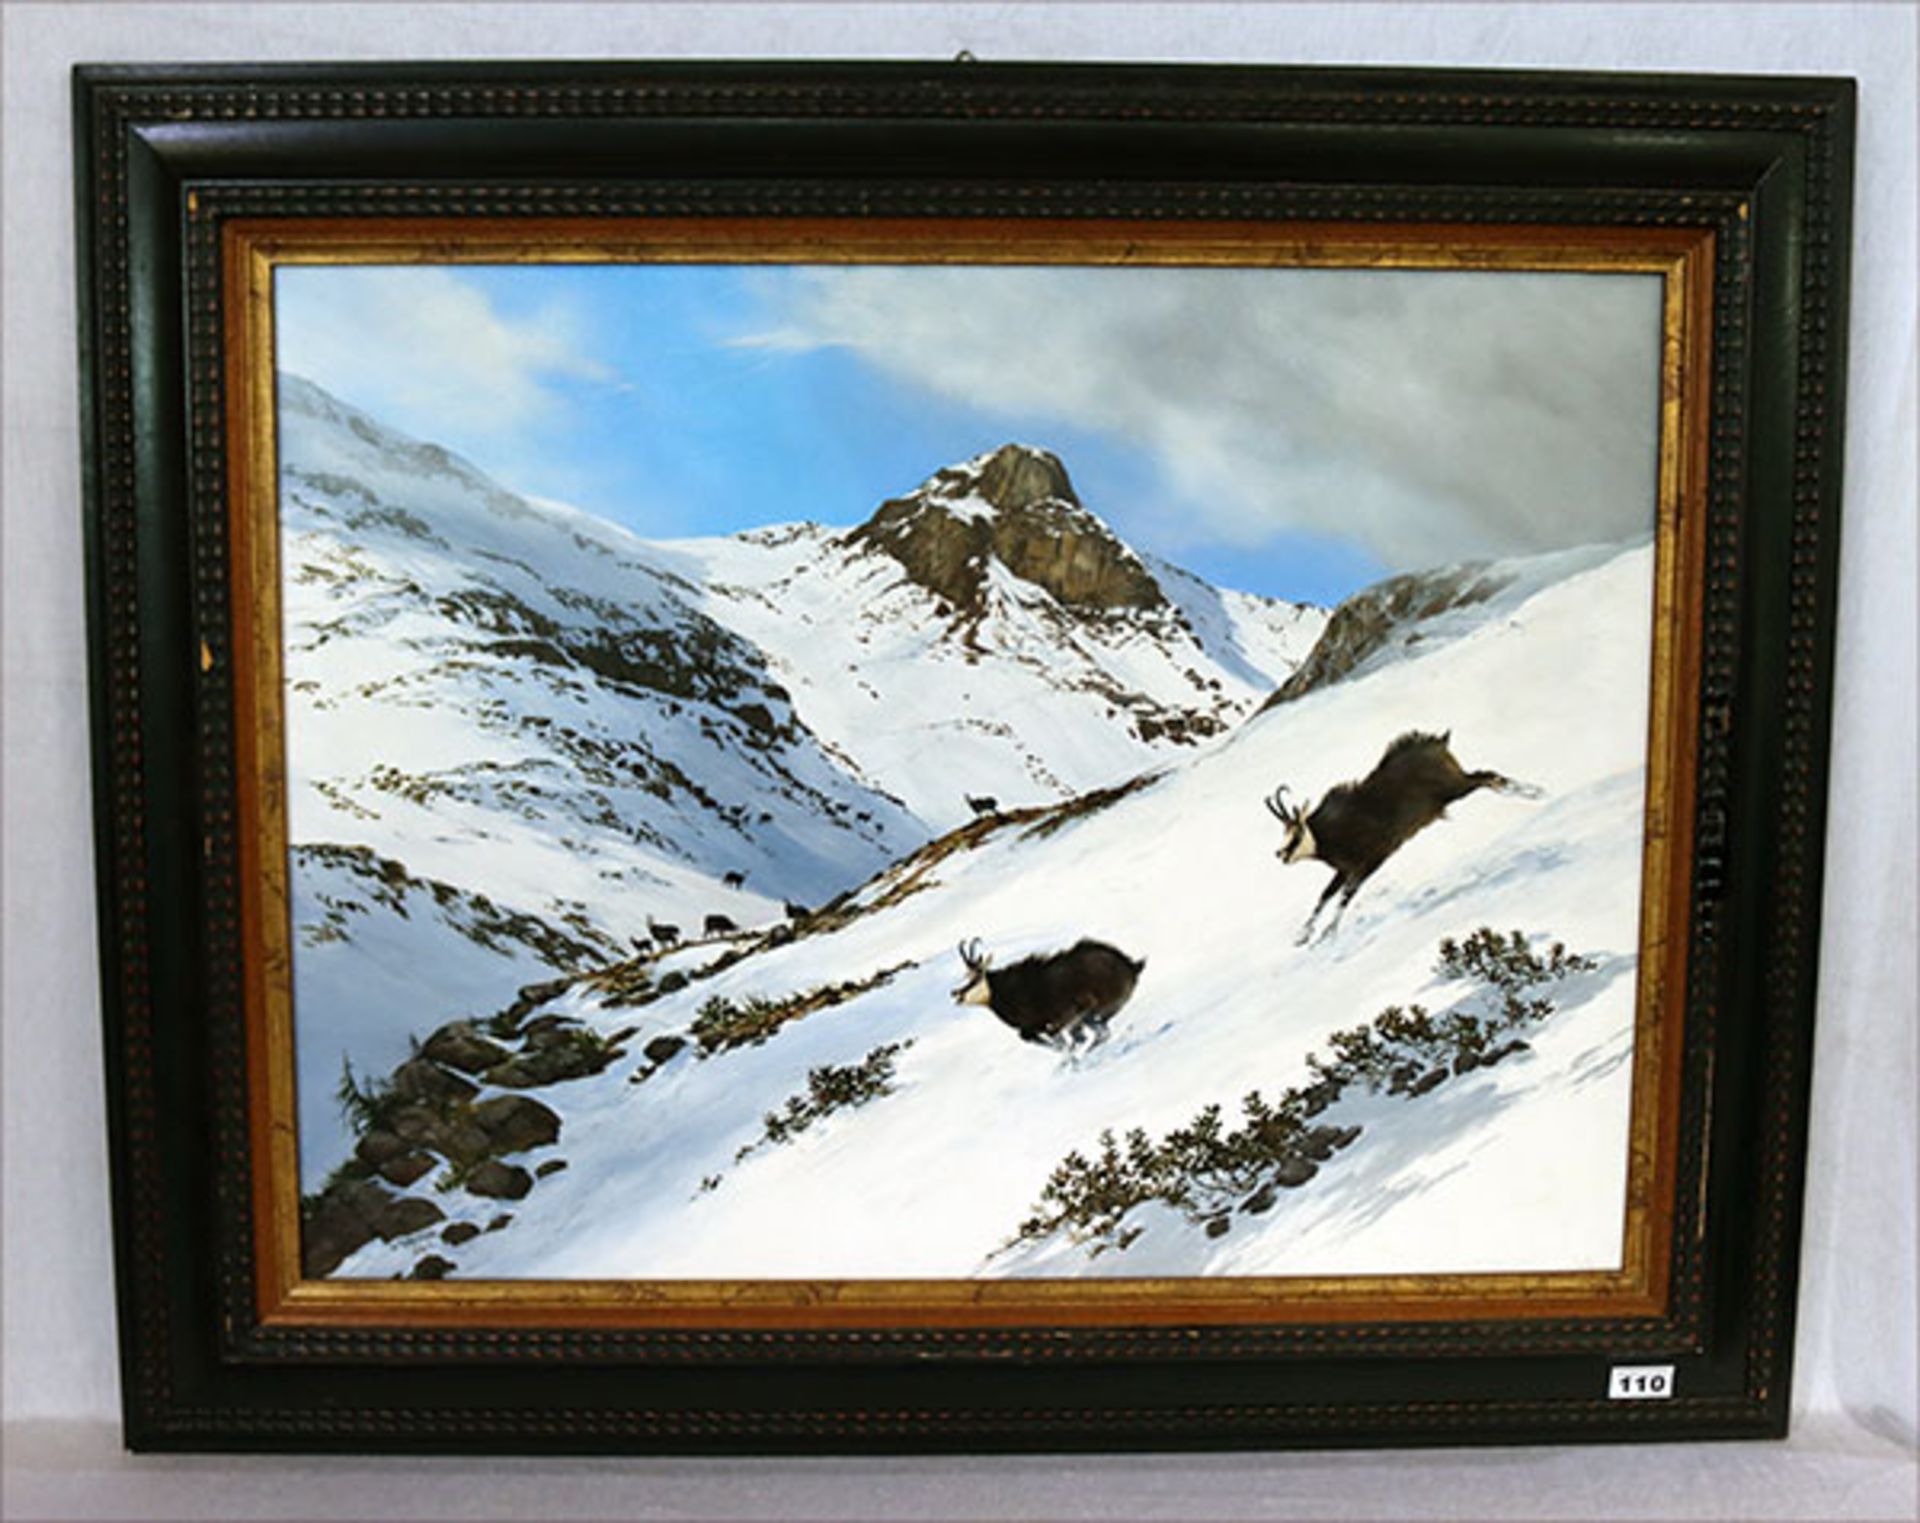 Gemälde ÖL/LW 'Gemsenrudel im schneebedeckten Hochgebirge', signiert W. (Walter) Gamper, 2001,